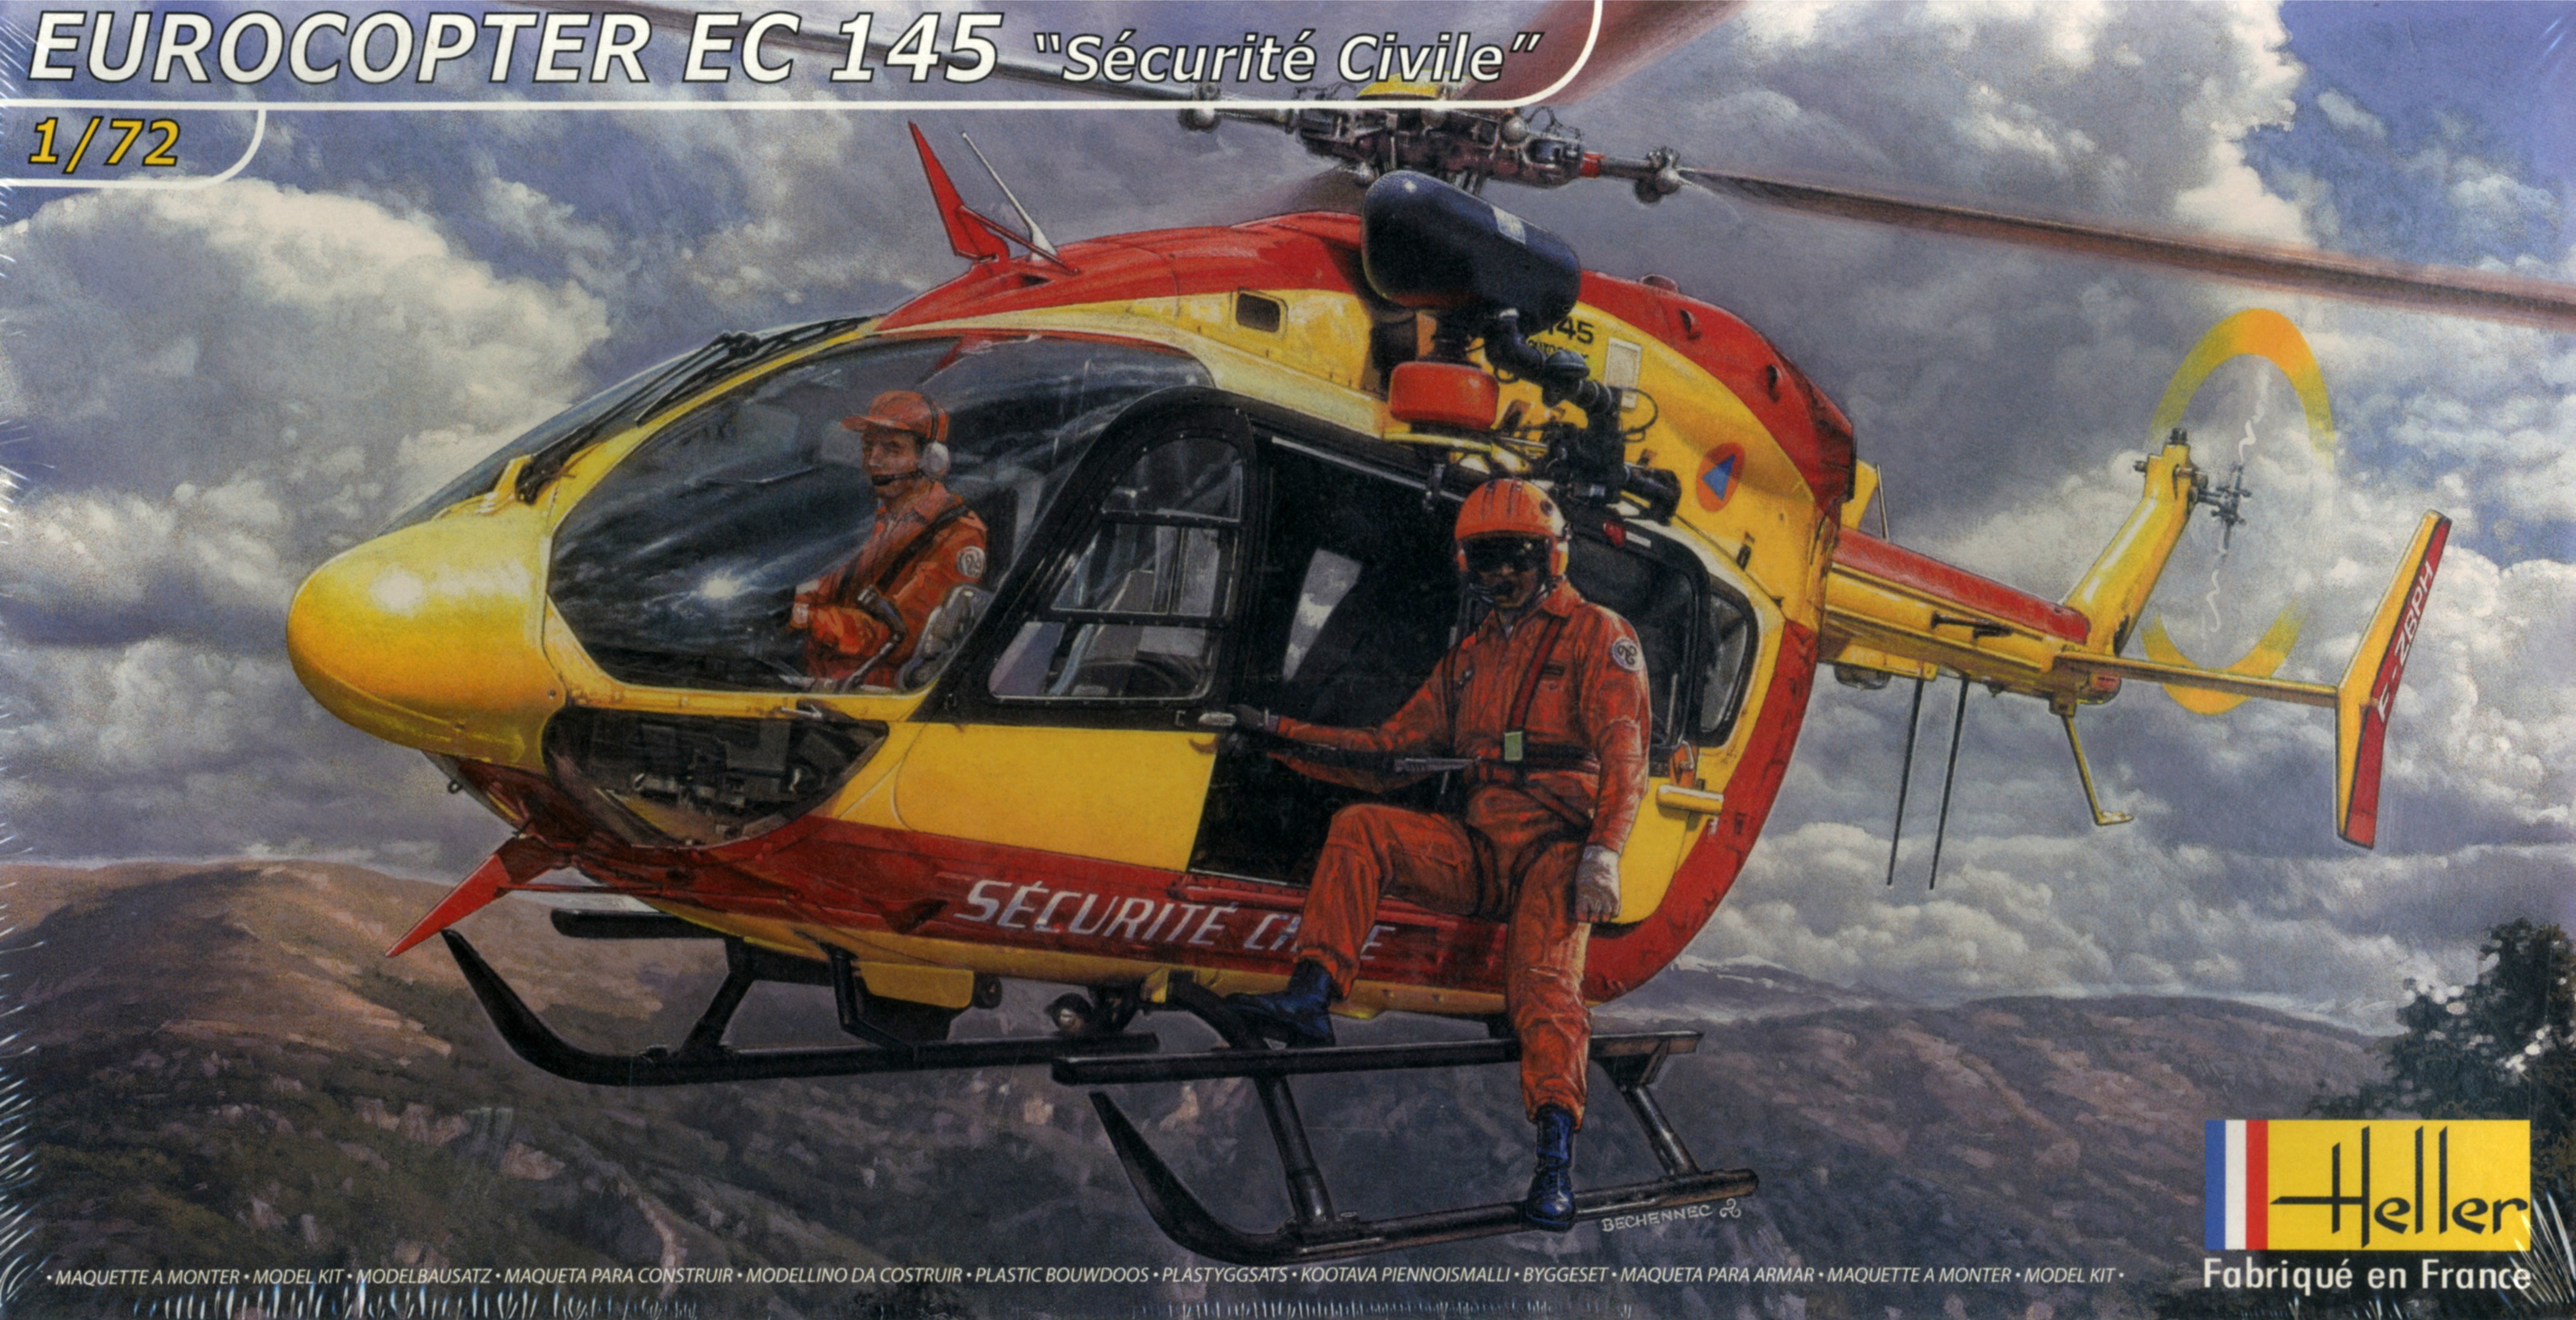 Hélicoptère SRB Eurocopter EC145 Sécurité Civile Super Scale Series  Electrique Kit - Hirobo - Mission Modélisme